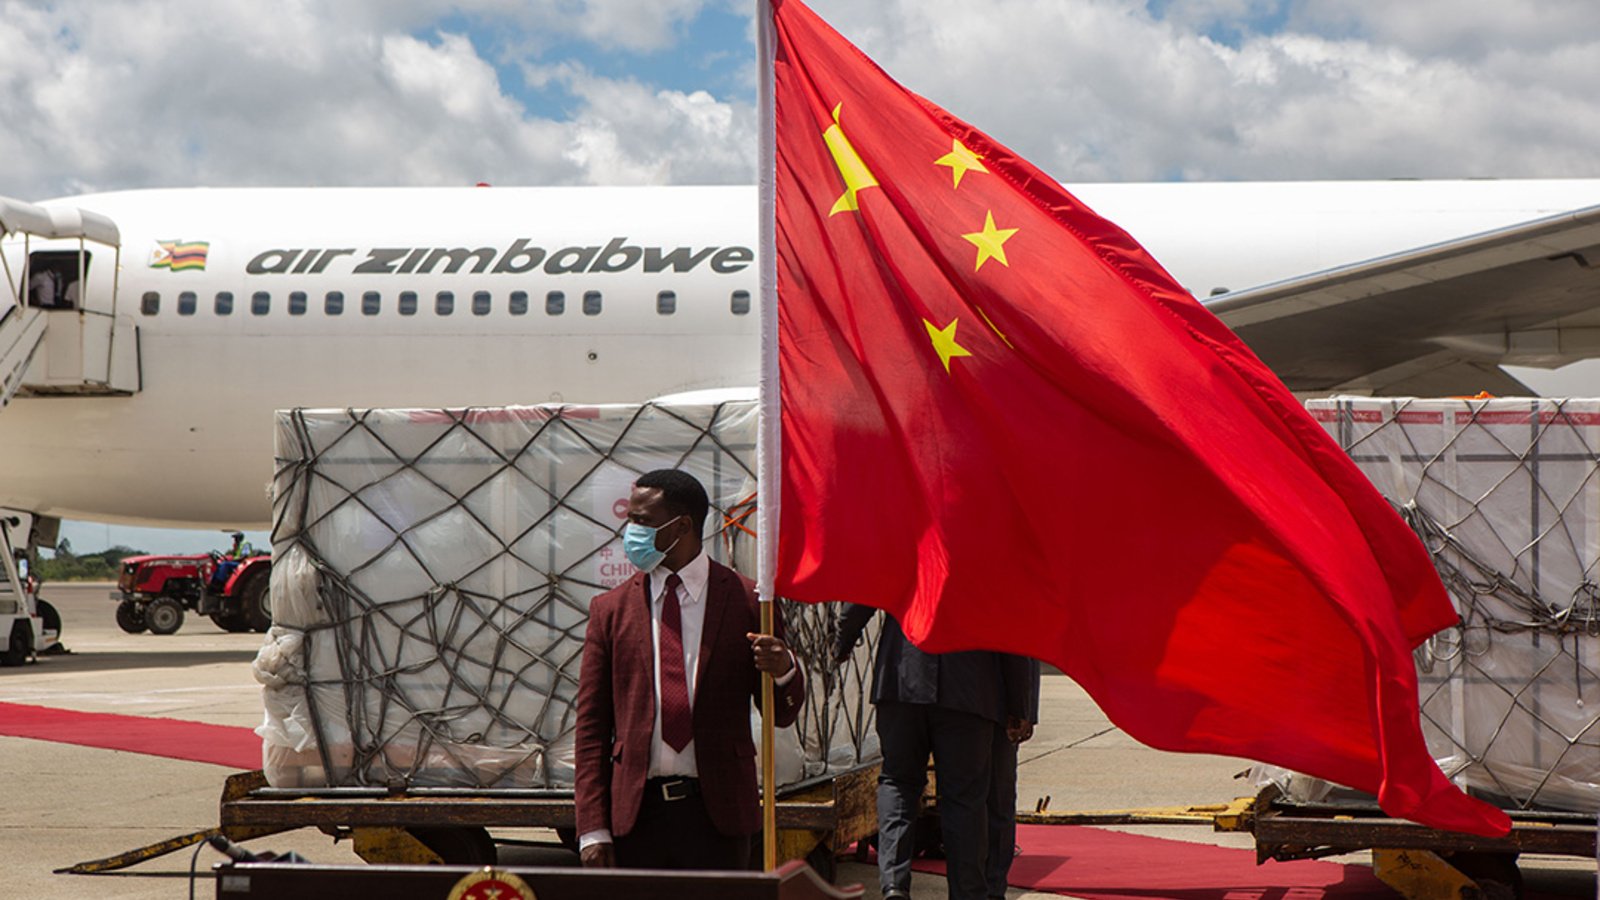 Pekino taisyklių peržiūra: kaip Kinija panaudojo savo ekonomiką ginklu, kad pasipriešintų pasauliui